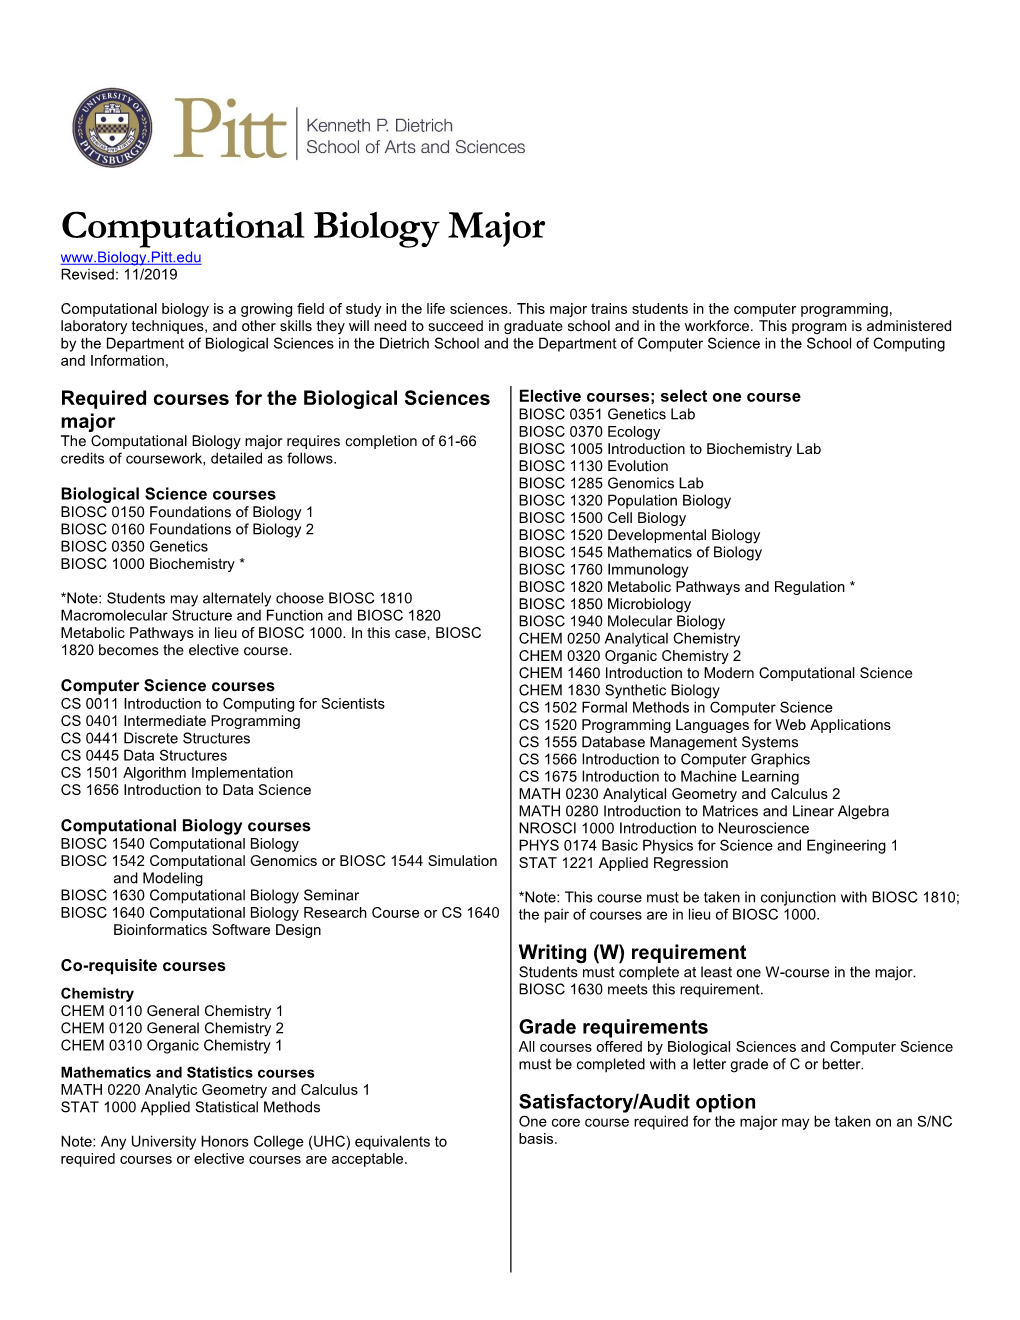 Computational Biology Major Revised: 11/2019